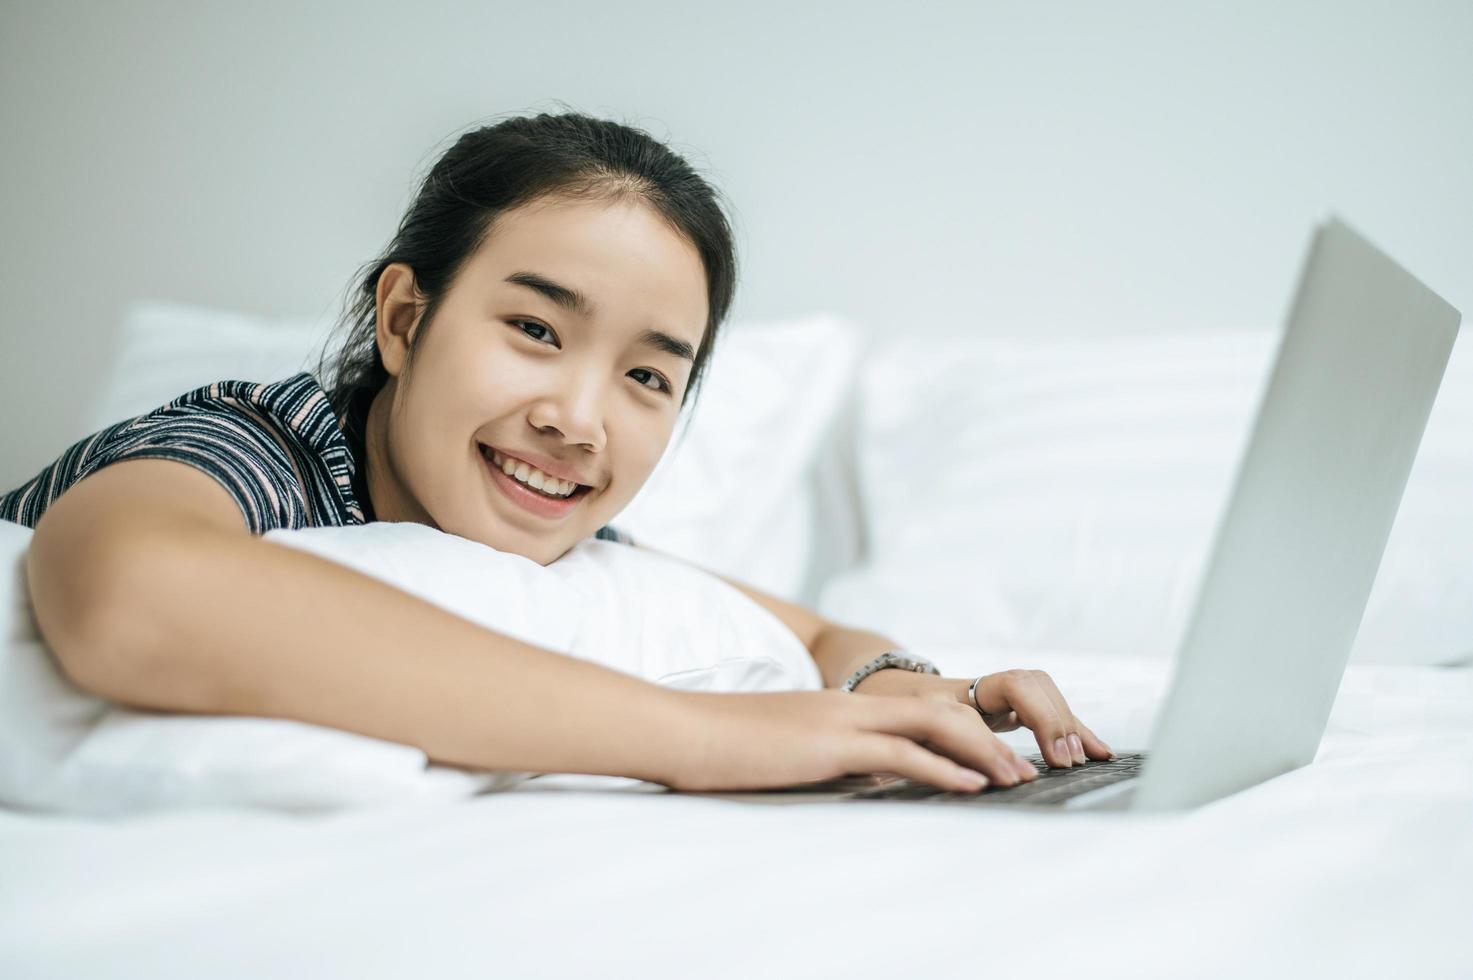 Una mujer vistiendo una camisa a rayas jugando en su computadora portátil en su cama foto